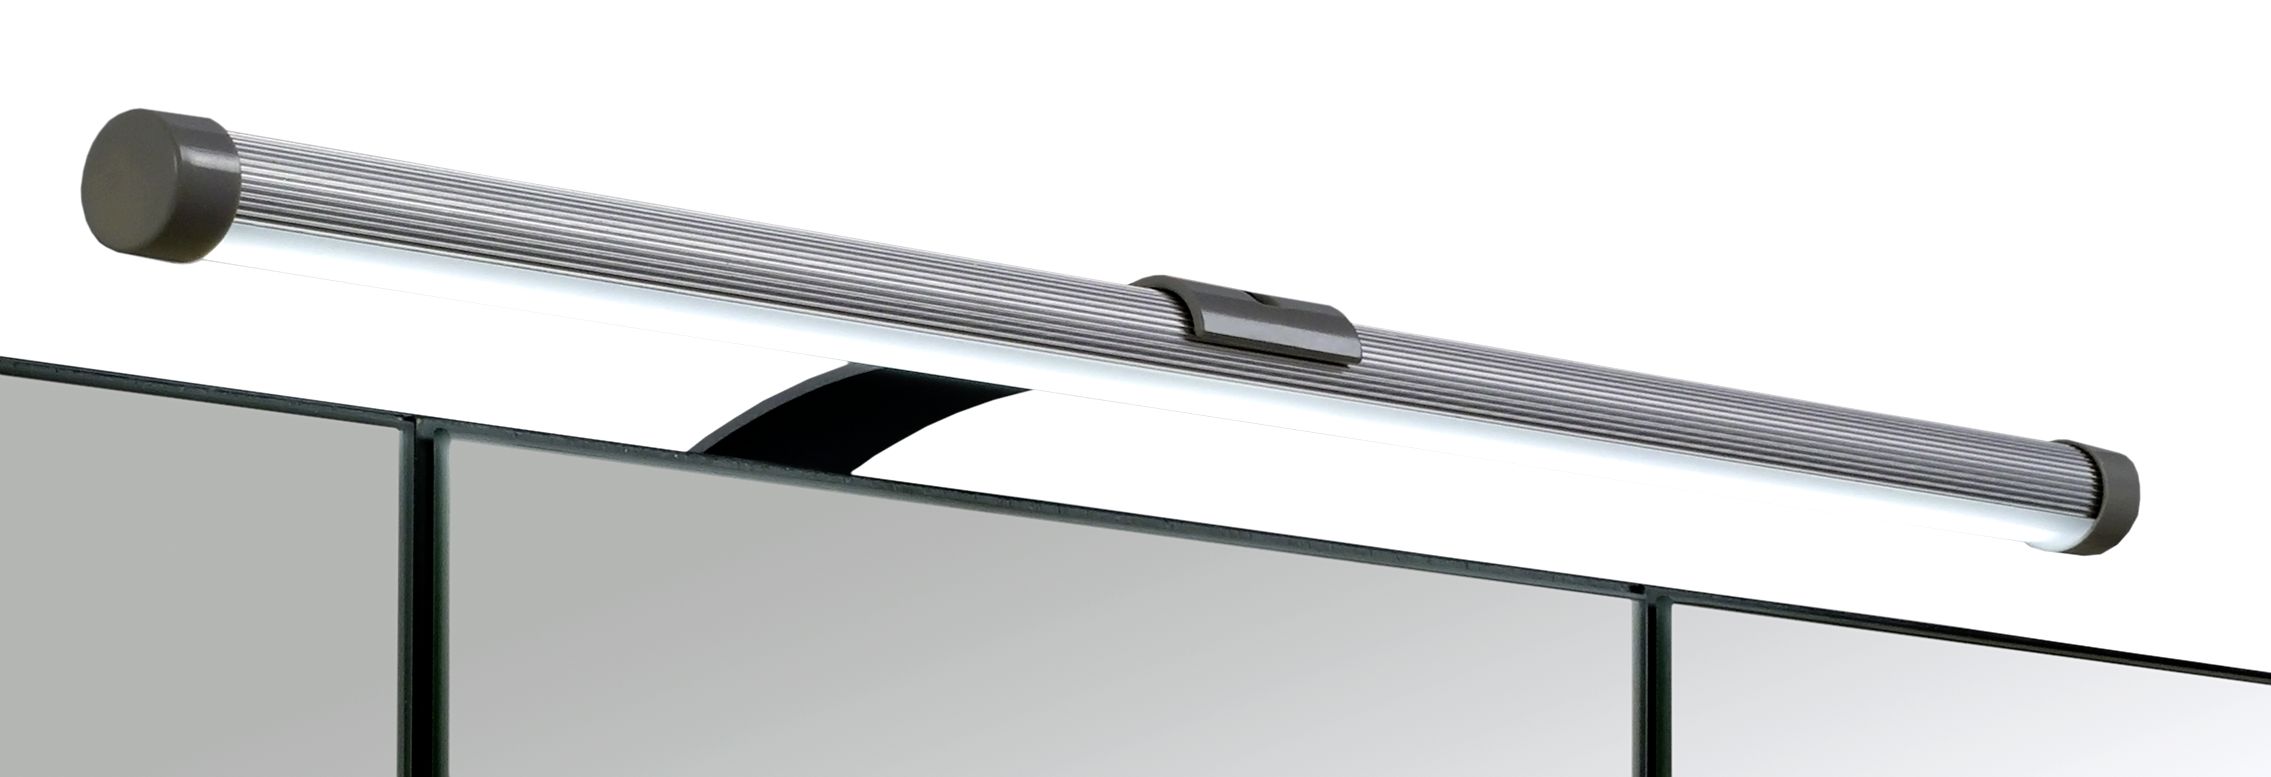 Spiegelschrank 80 inkl LED Beleuchtung Portofino von Held Möbel Weiß